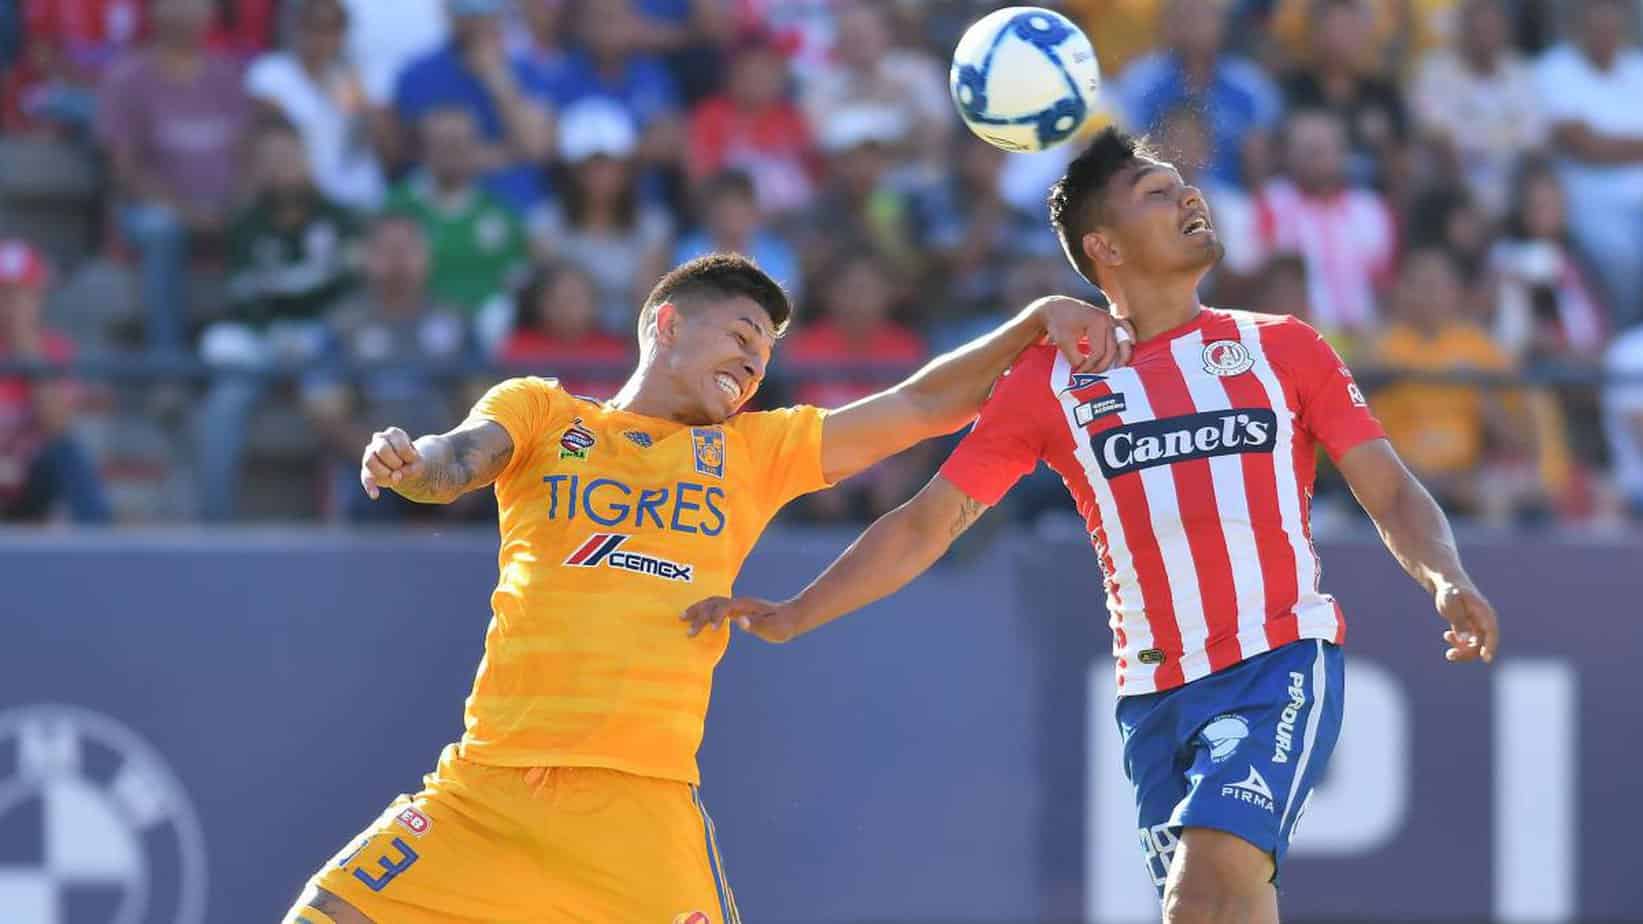 Tigres UANL vs. Atlético San Luis - Cuotas de apuestas y elección gratuita